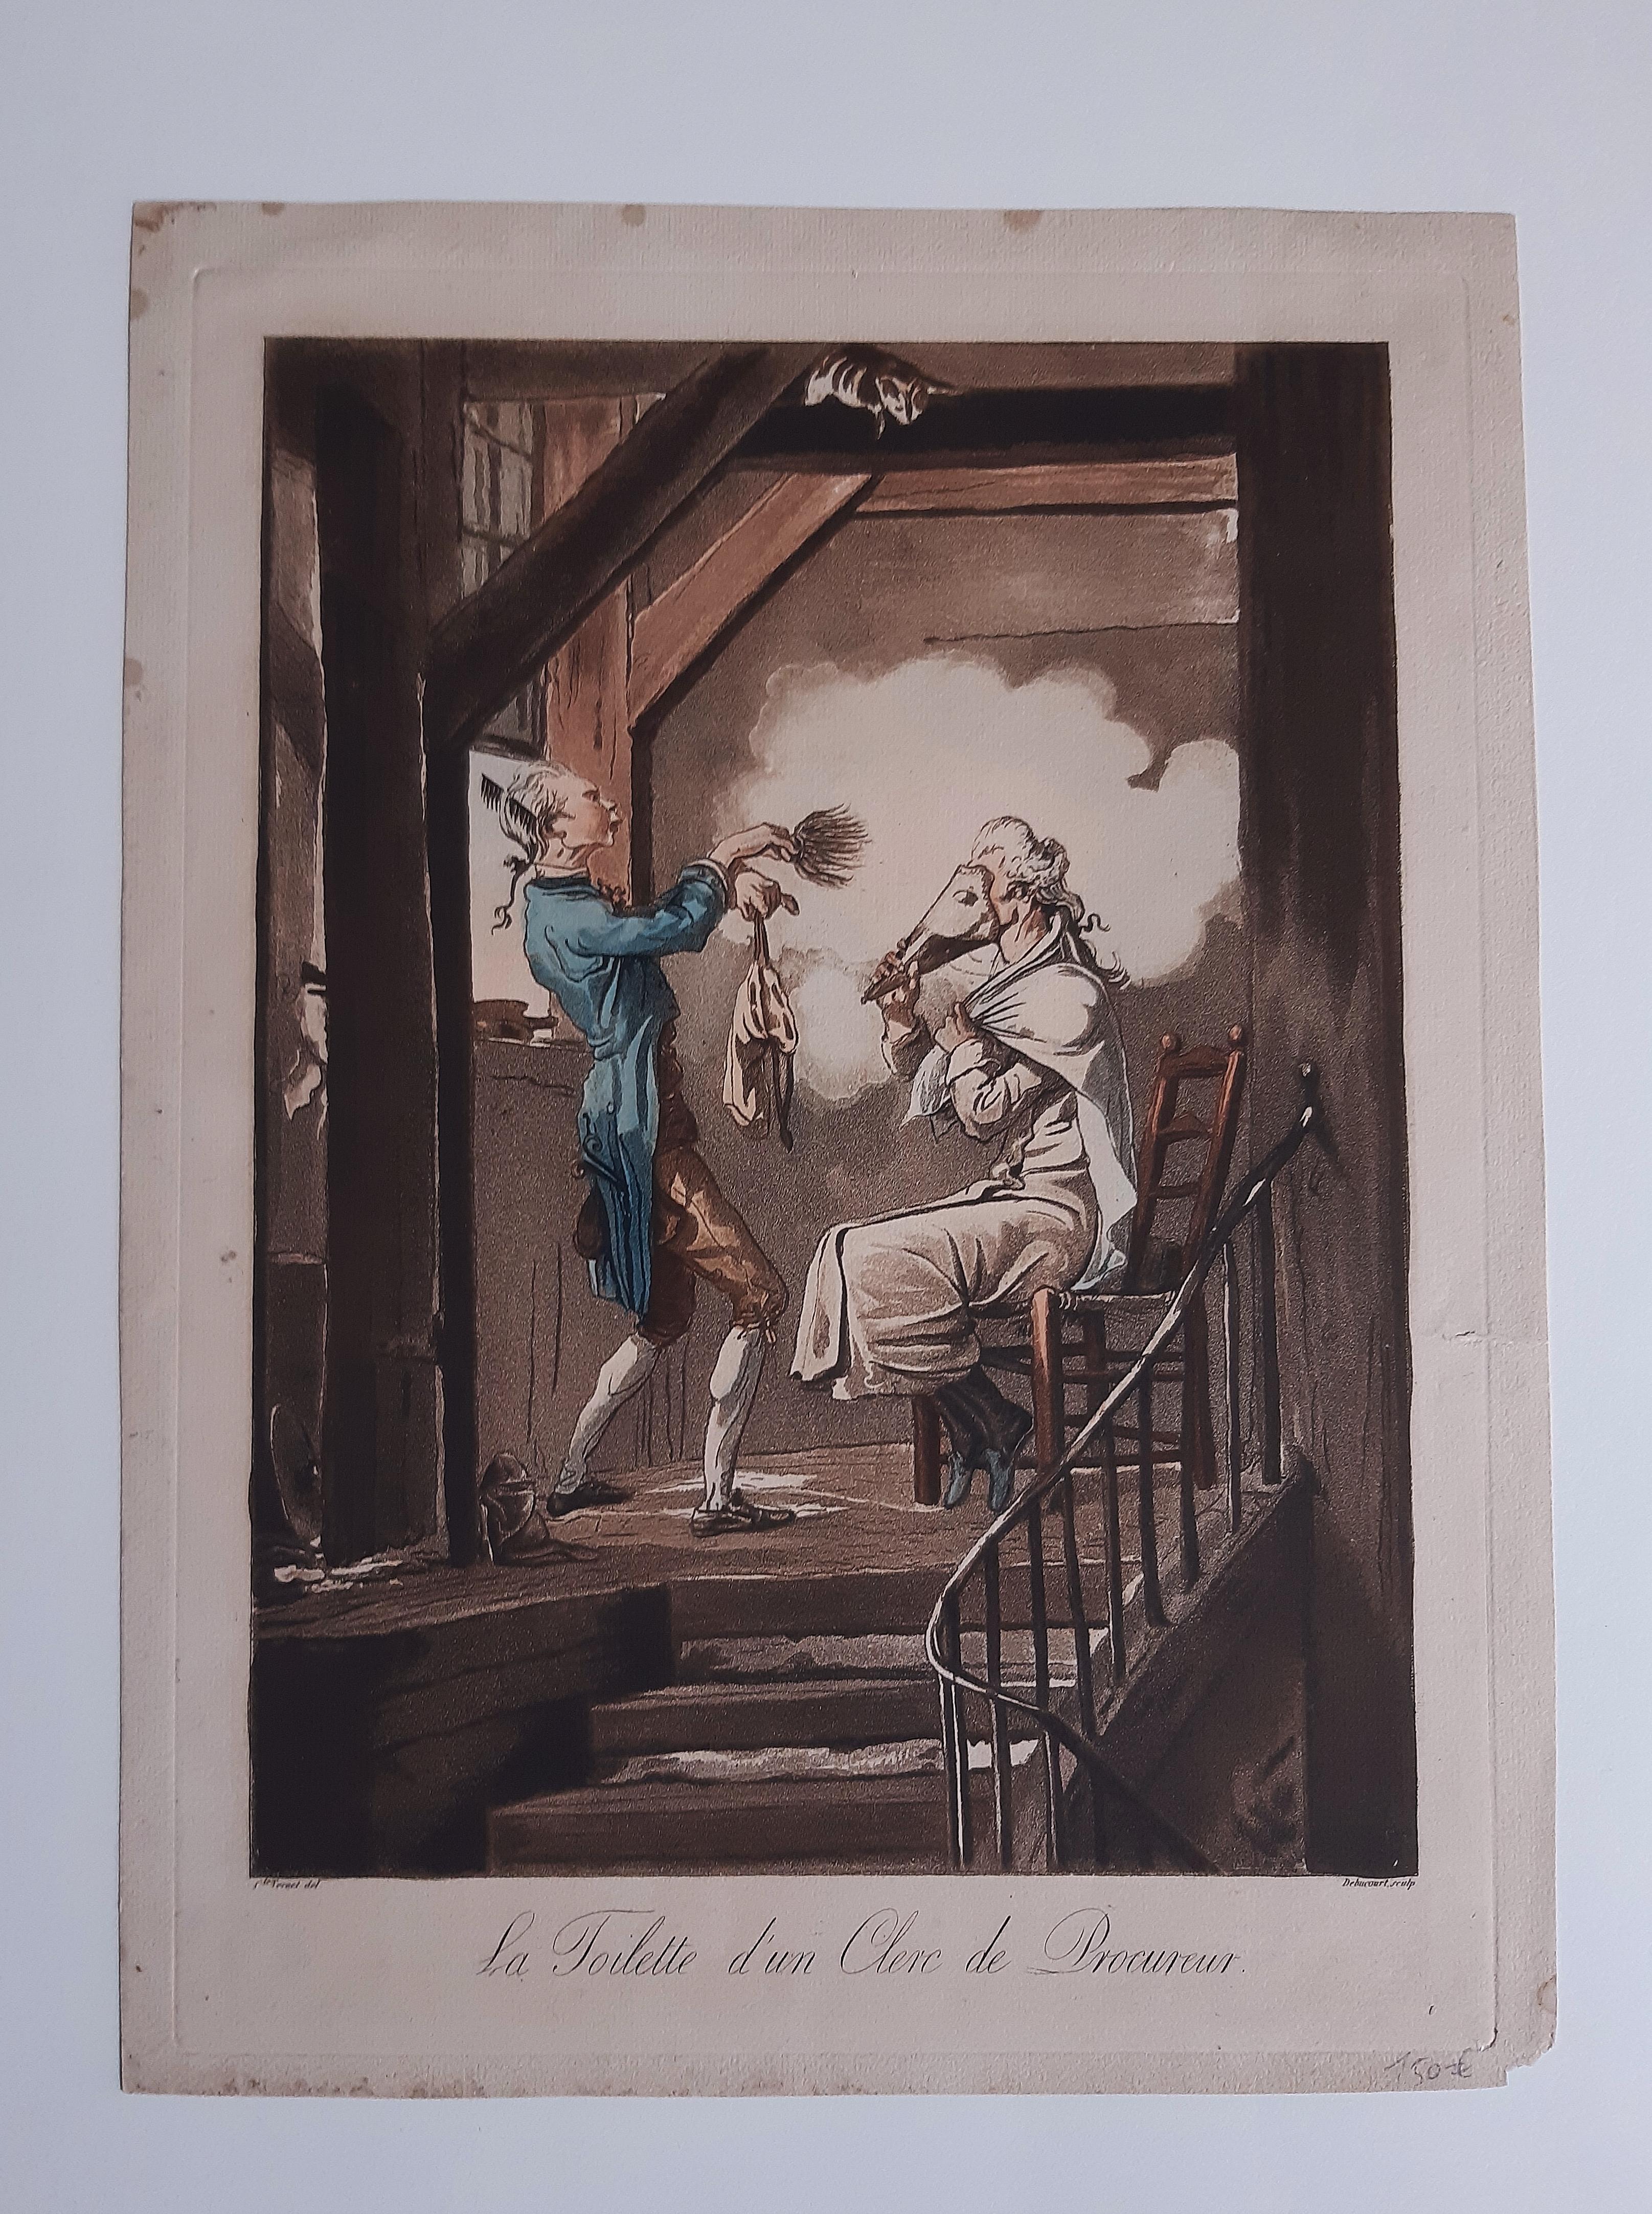 La toilette d’un Clerc de Procureur - Etching and Aquatint by C. Vernet - 1816 - Print by Carle Vernet (Antoine Charles Horace Vernet)